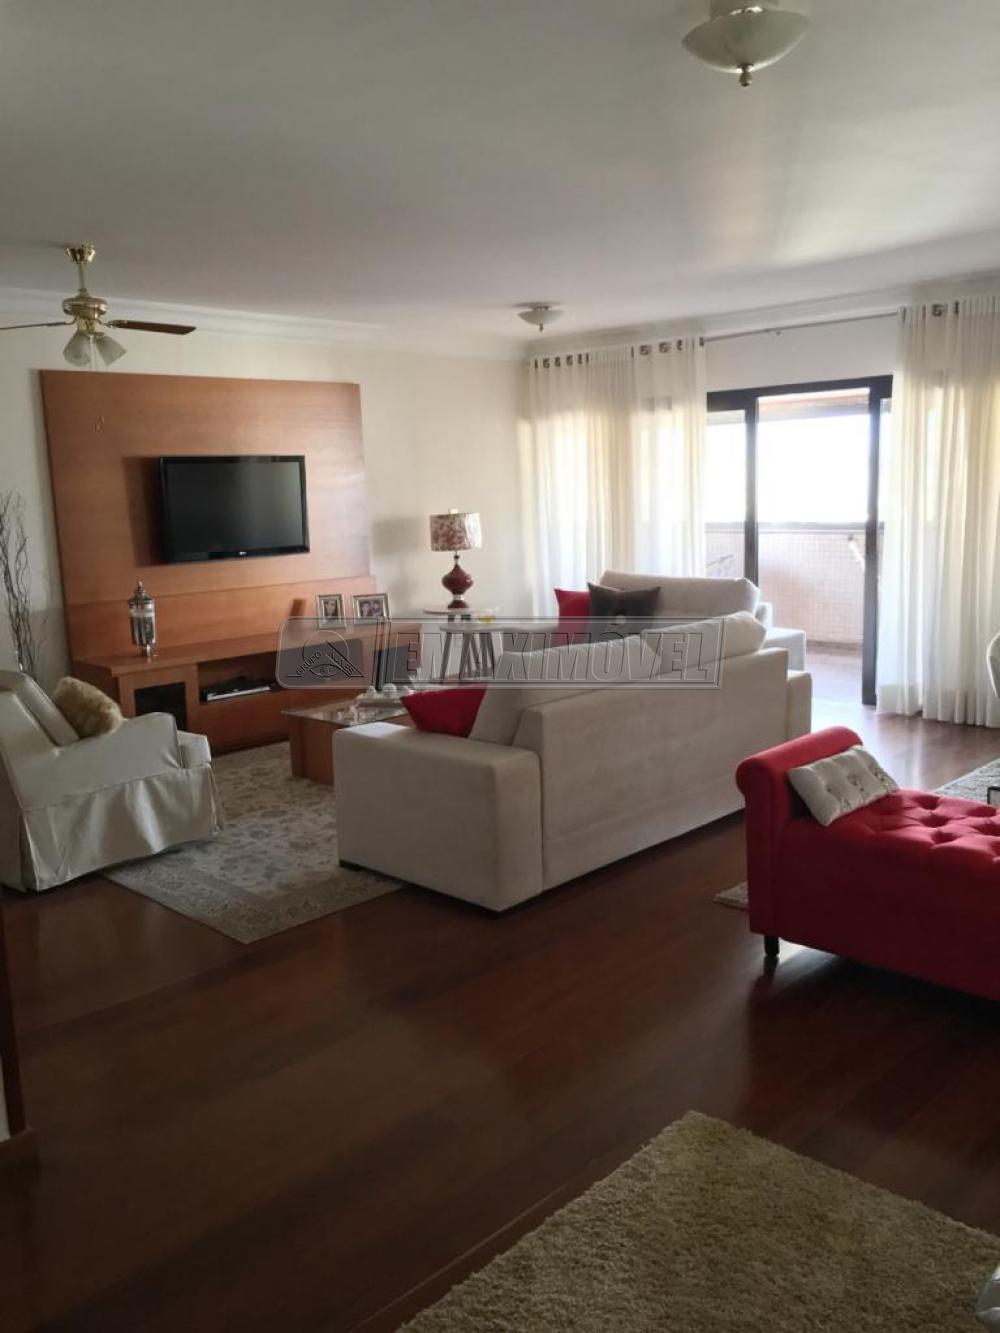 Comprar Apartamento / Padrão em Sorocaba R$ 1.200.000,00 - Foto 6